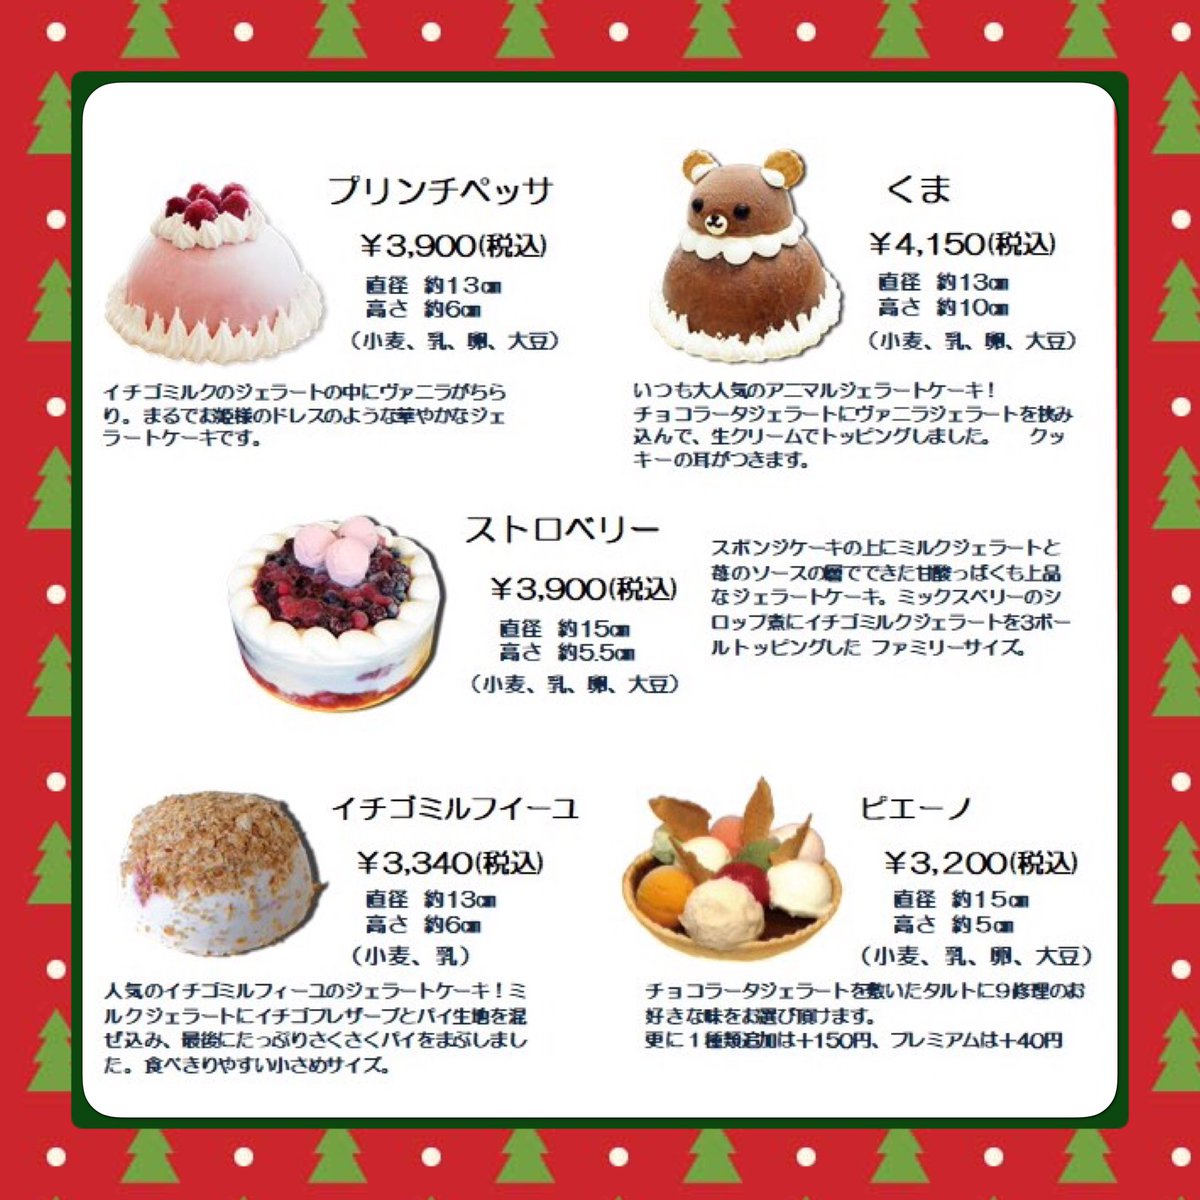 ウディック 木のおもちゃジェラートカフェ クリスマスケーキはお決まりですか 今年はジェラートケーキはいかがでしょう 今年は5種類 見た目も可愛くおいしくヘルシー 予約分で終了してしまう種類もあるのでお早めに ジェラート ジェラートケーキ